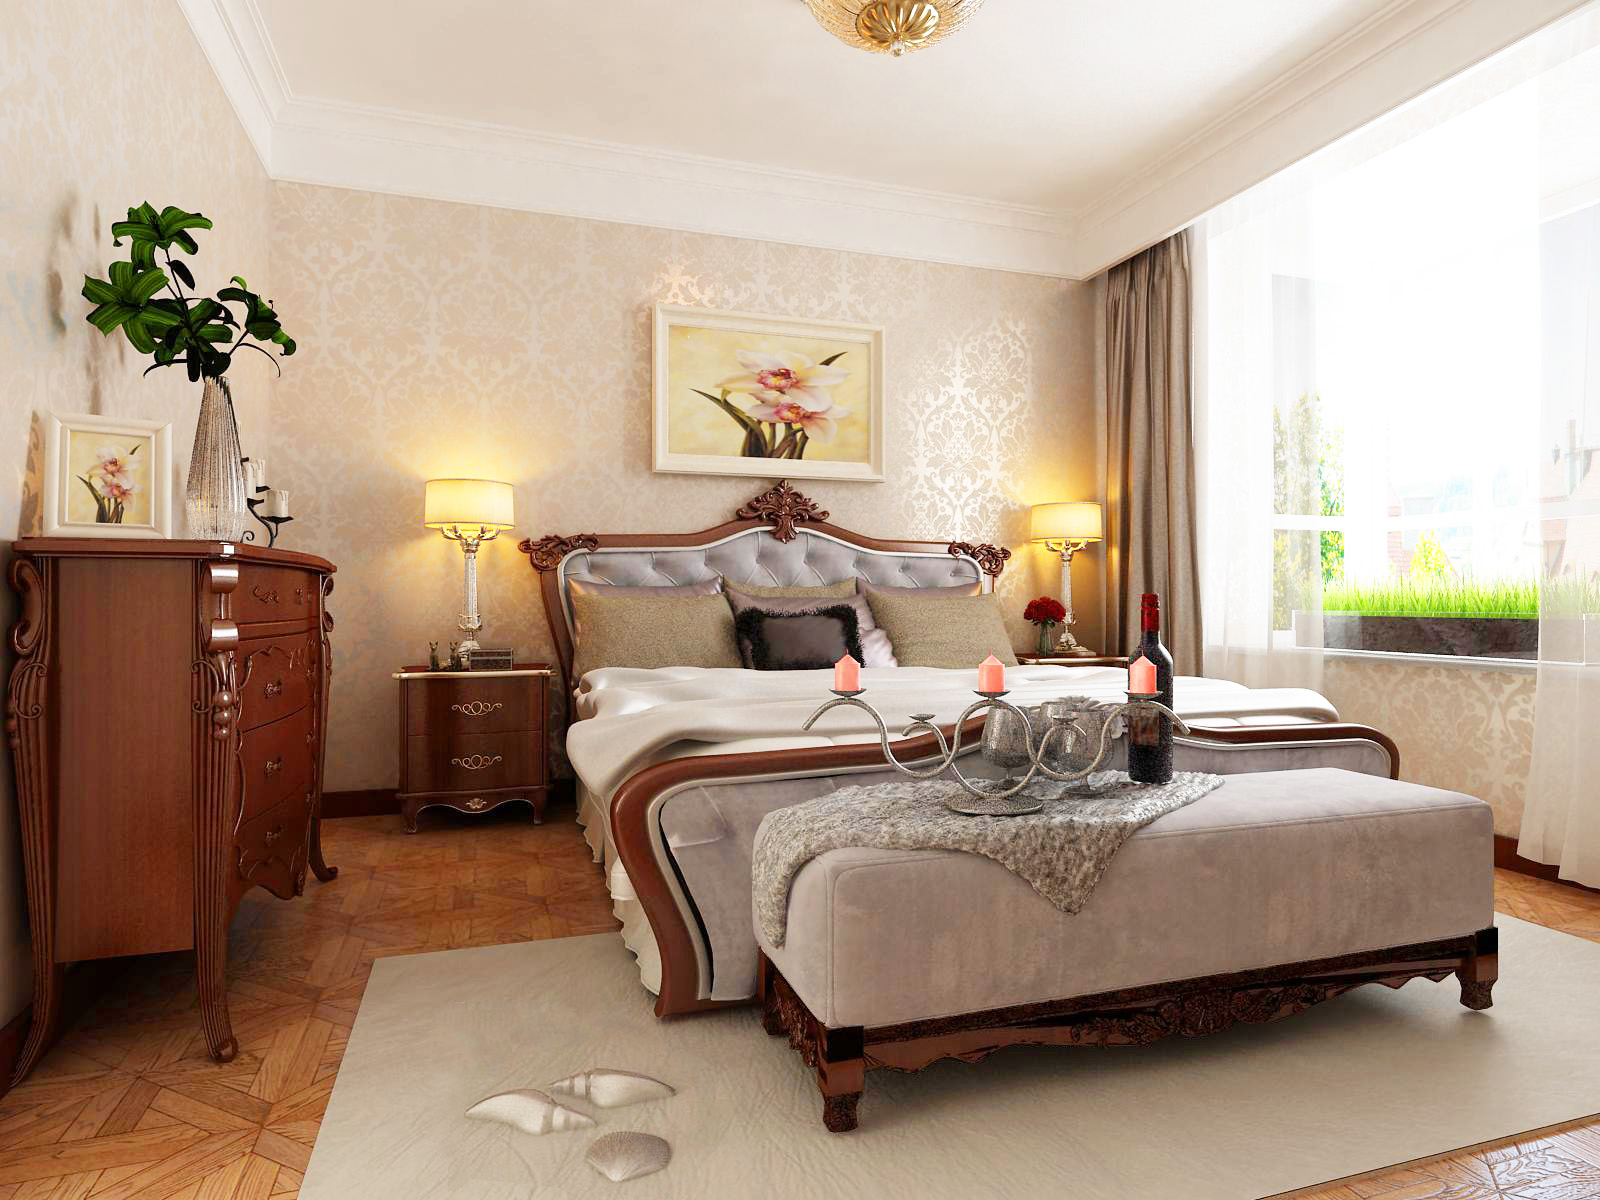 美式 三居 悦装网 卧室图片来自悦装网-王凯旋在美式风格多彩三居122平家庭的分享